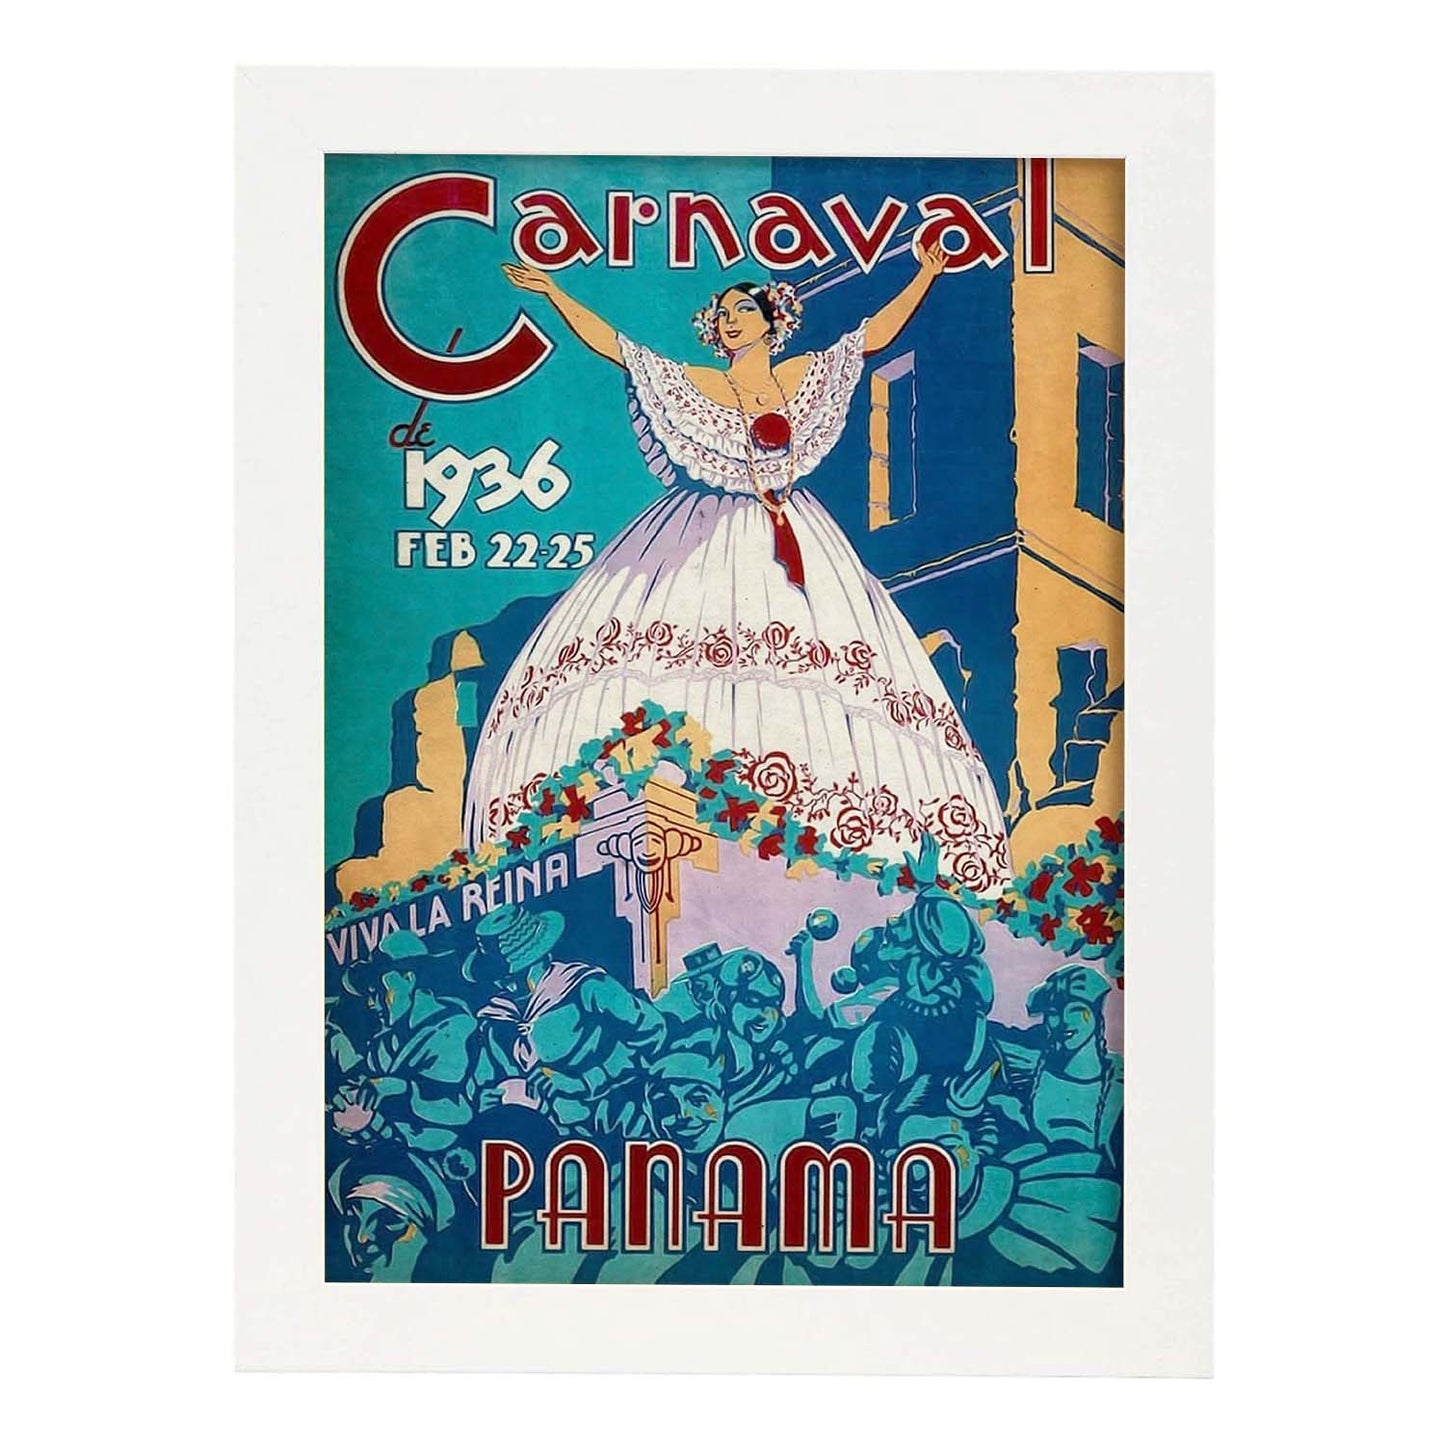 Poster vintage de Carnaval de Panama. con imágenes vintage y de publicidad antigua.-Artwork-Nacnic-A4-Marco Blanco-Nacnic Estudio SL